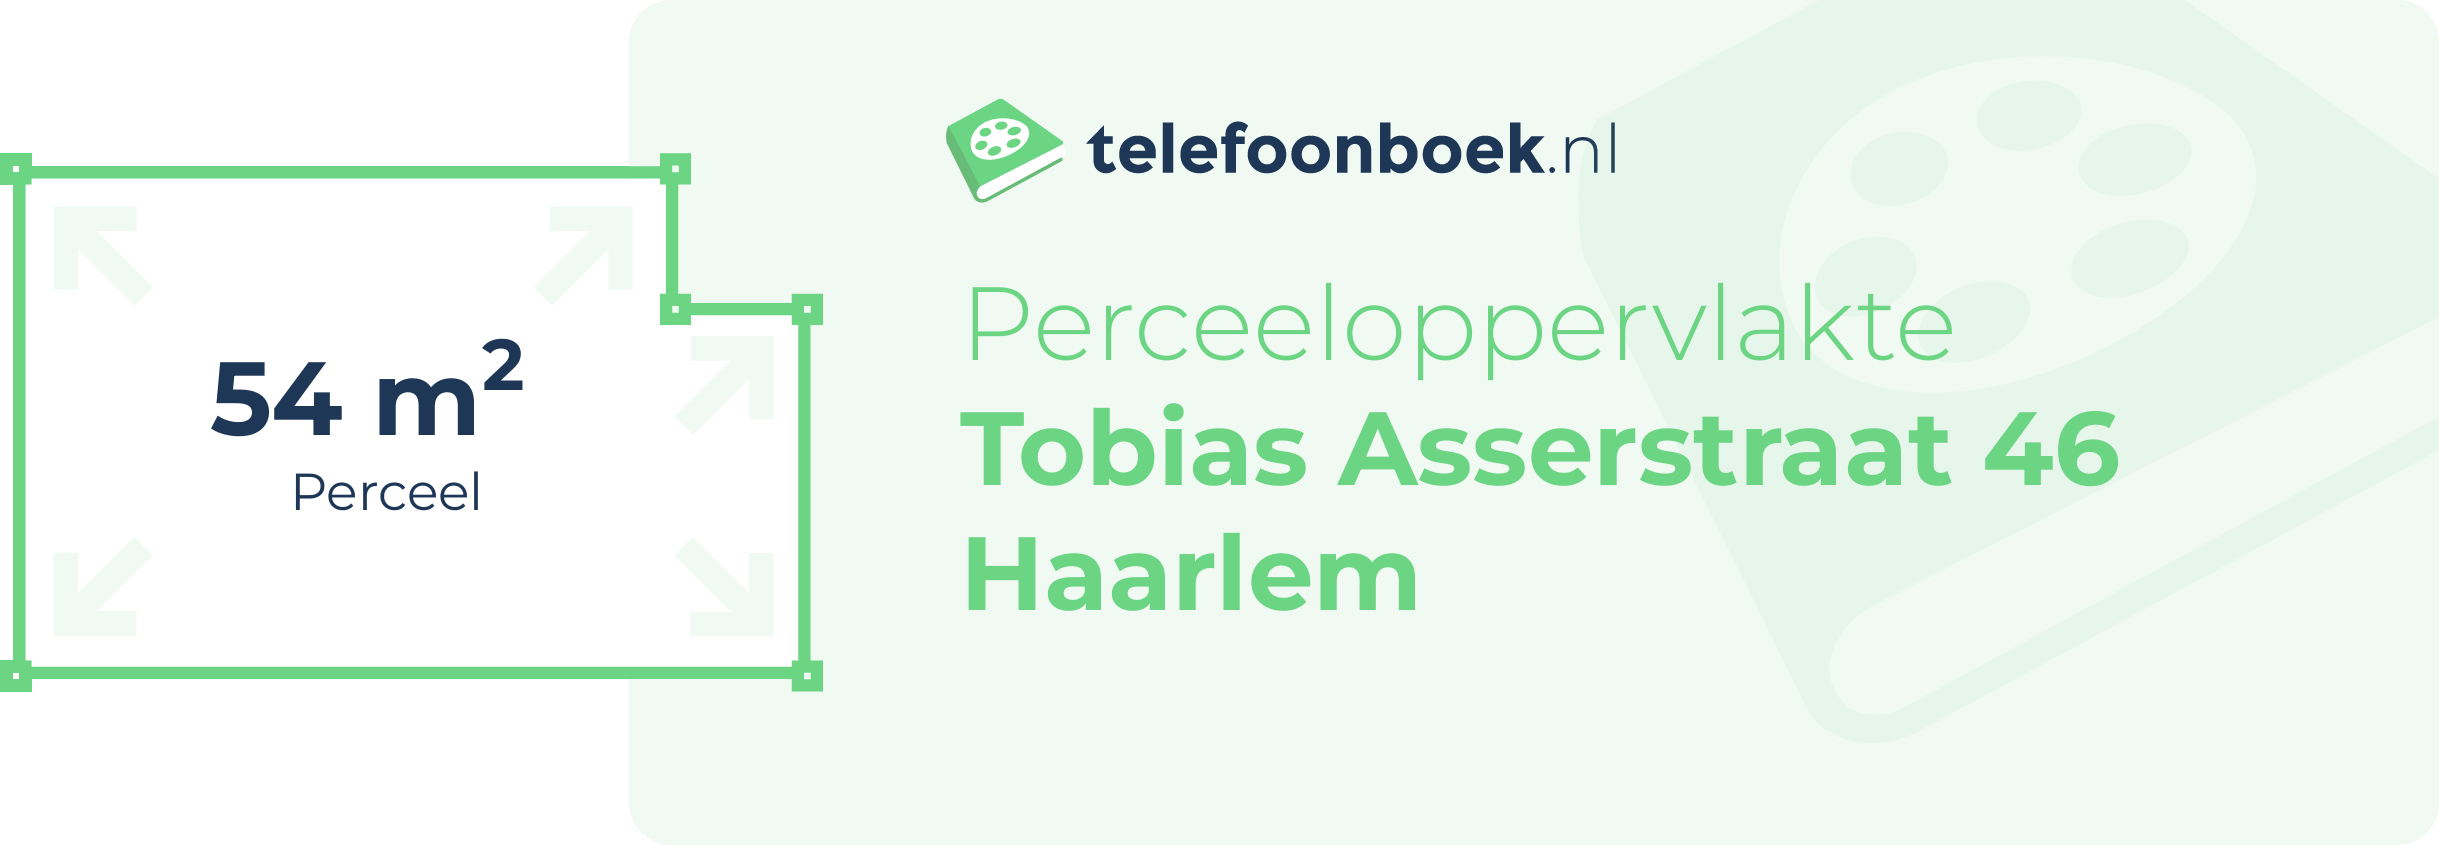 Perceeloppervlakte Tobias Asserstraat 46 Haarlem